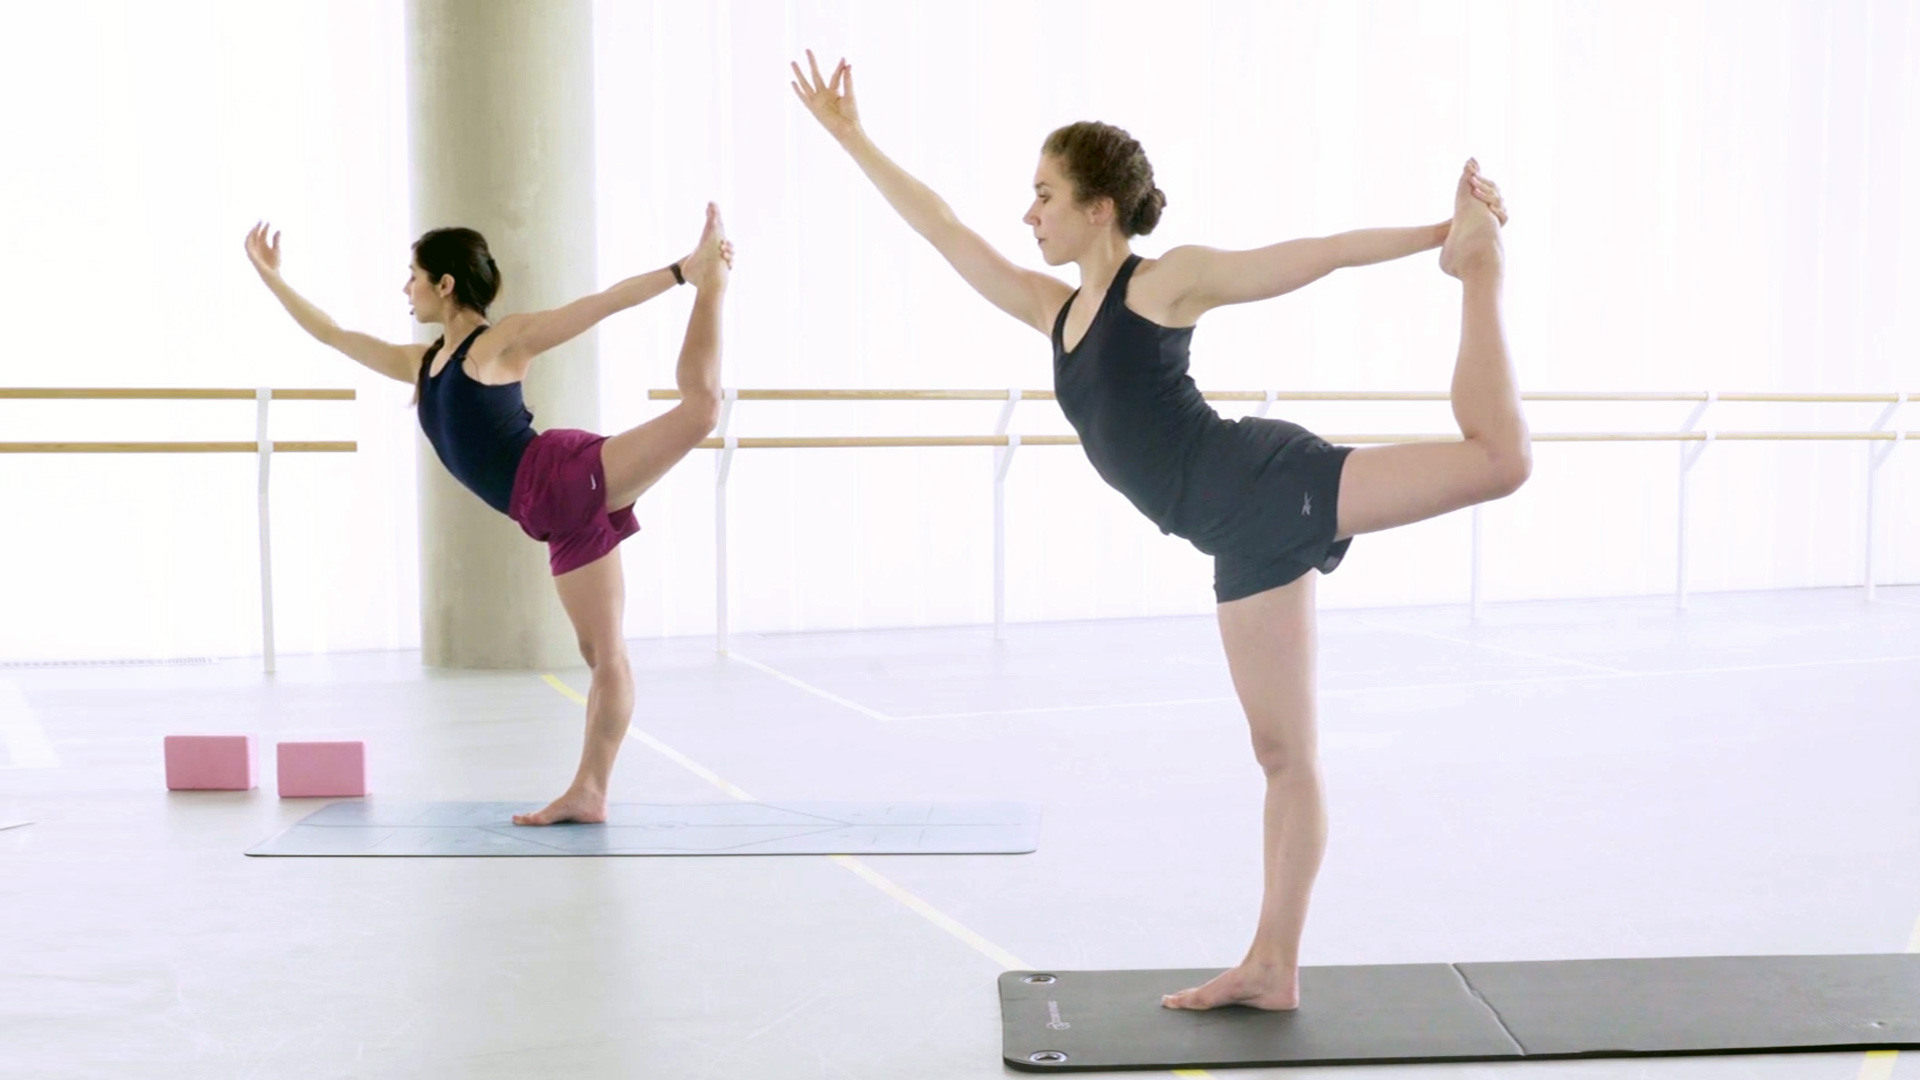 Two women practising ballet